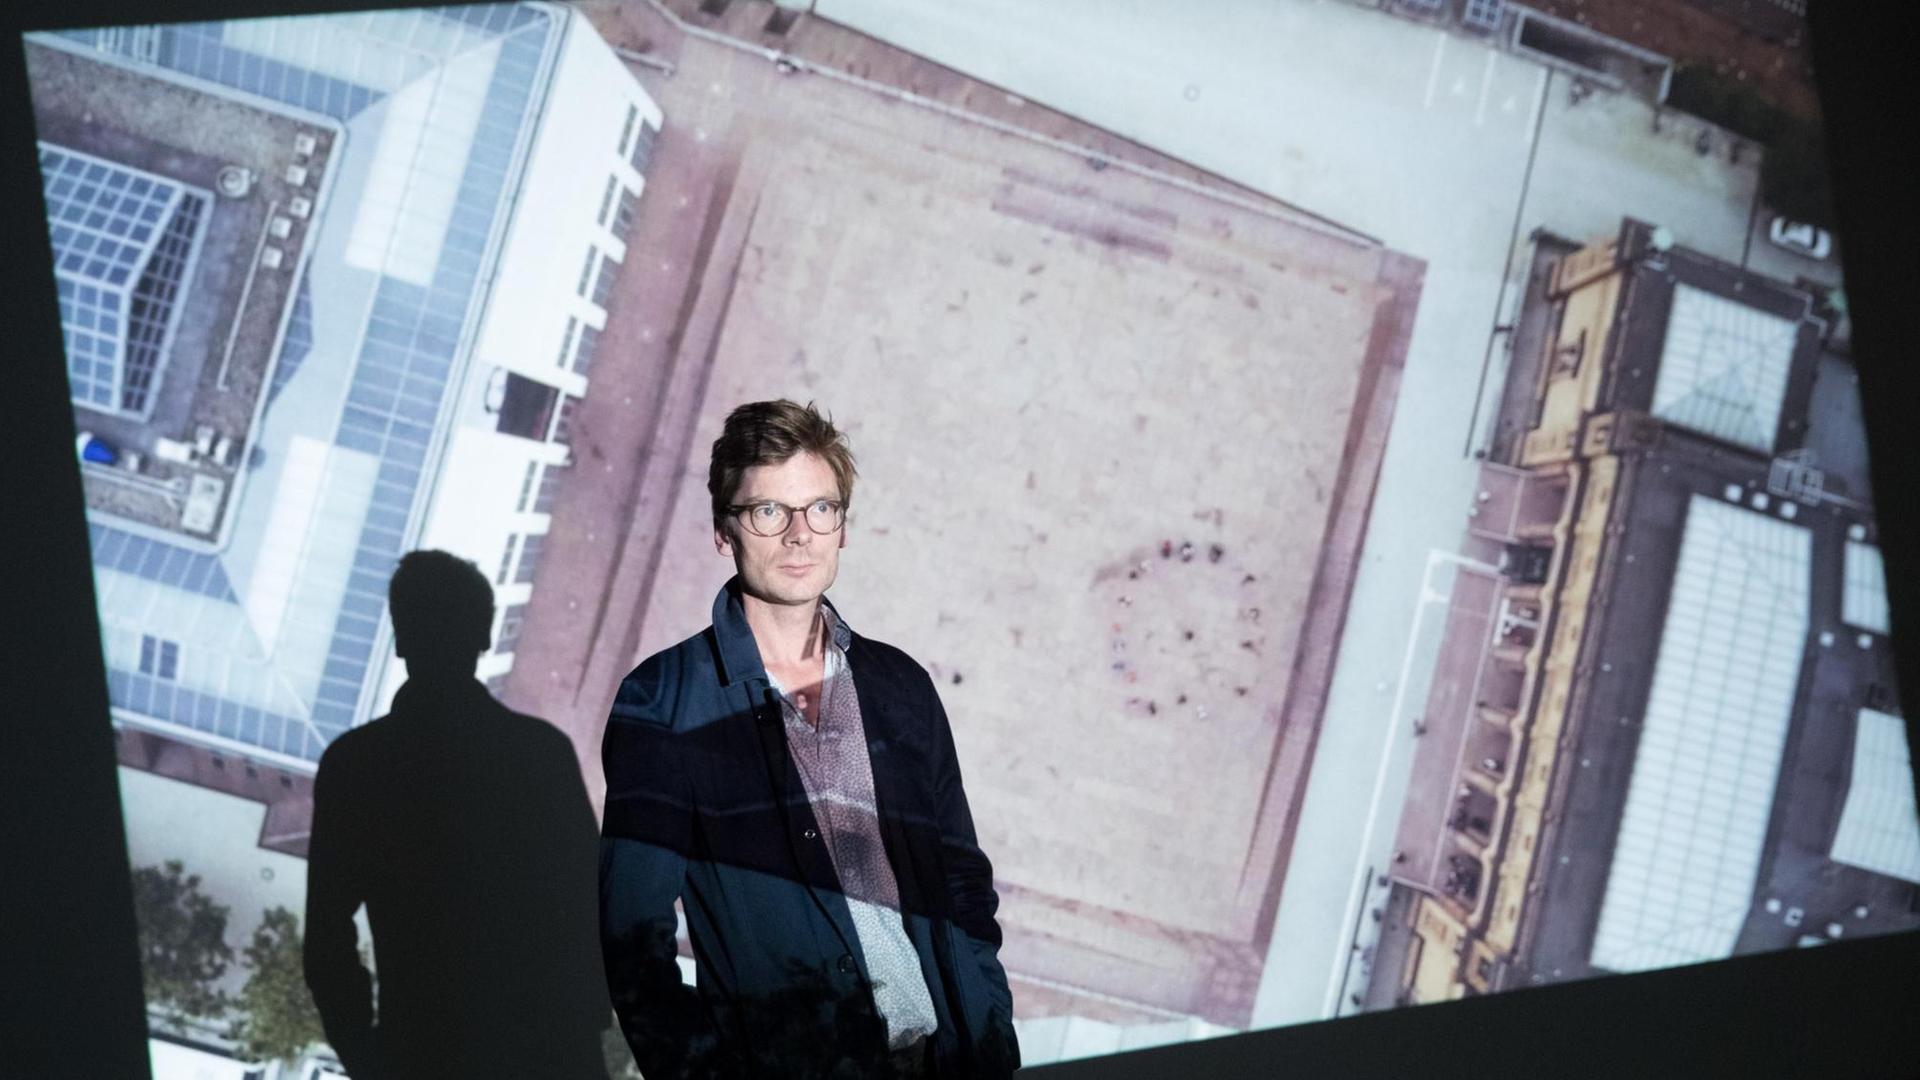 Der Künstler Clemens von Wedemeyer steht am 28.09.2016 in der Hamburger Kunsthalle in Hamburg wärend eines Presserundgangs durch die Ausstellung "Clemens von Wedemeyer - Orte unter Einfluss" in der Projektion seiner Arbeit "Square".